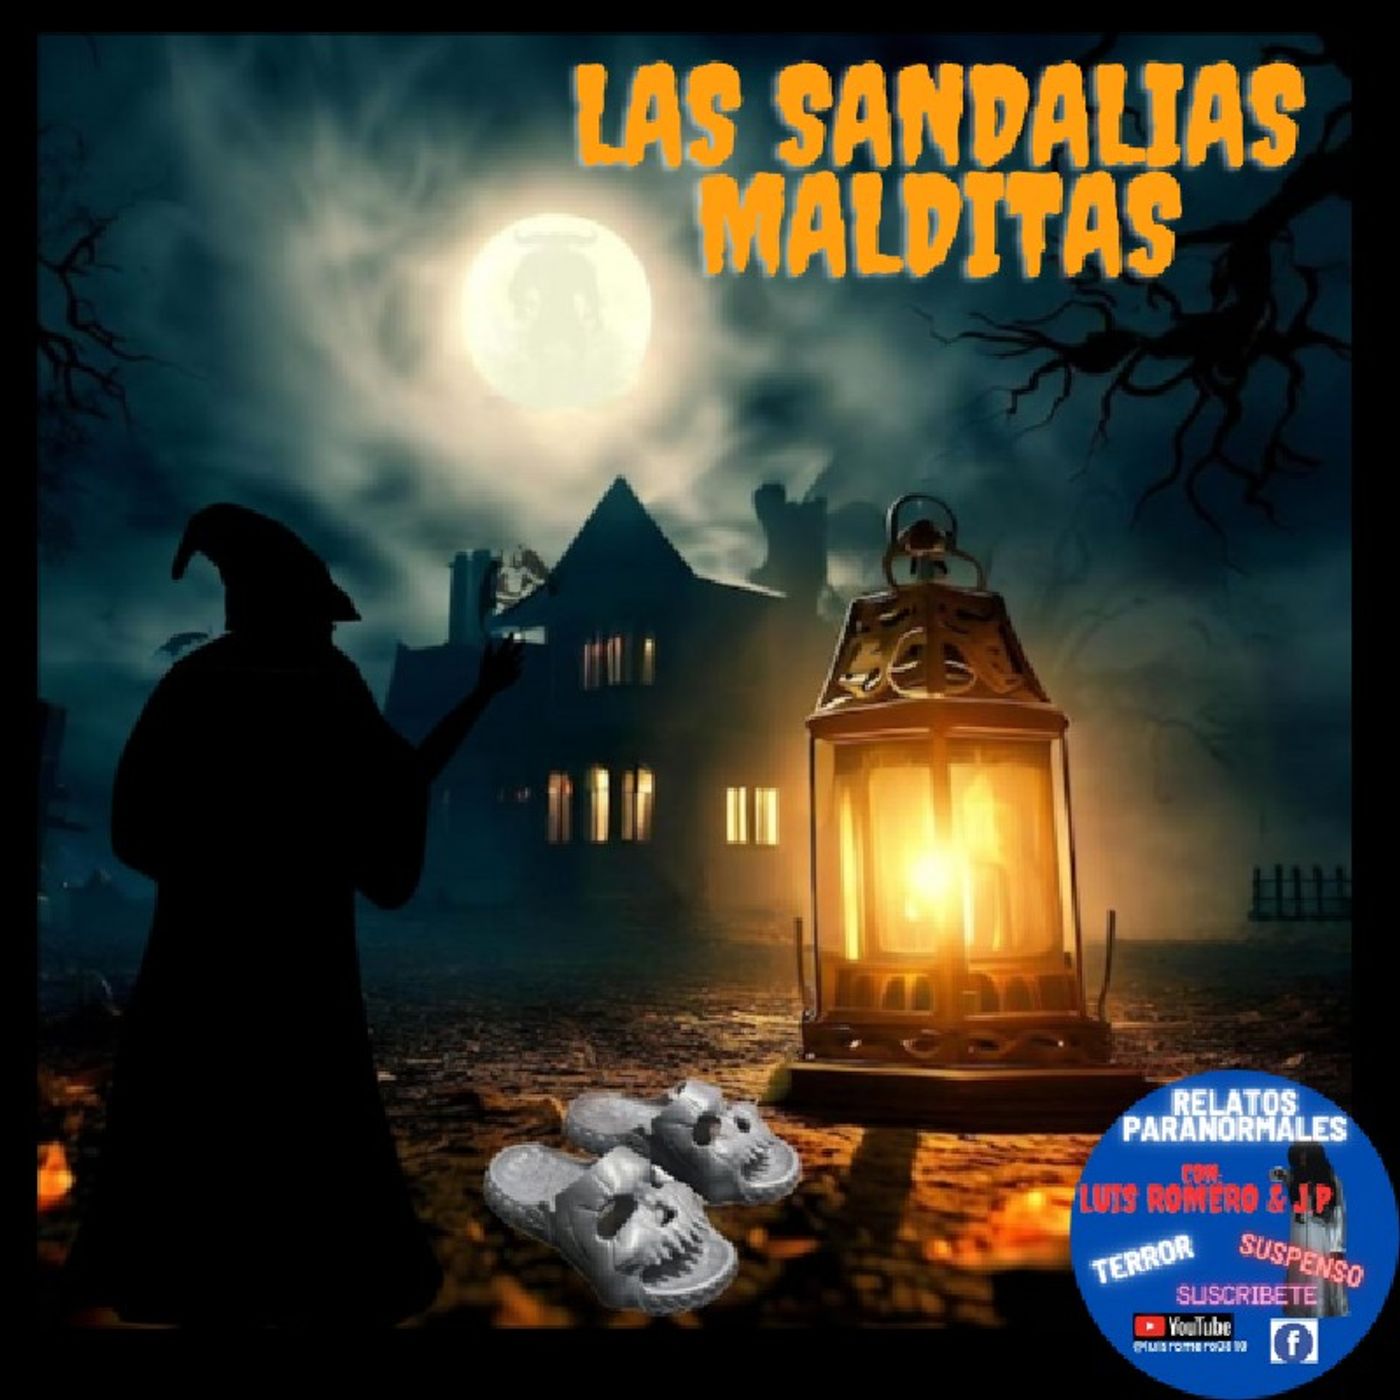 Las Sandalias Malditas